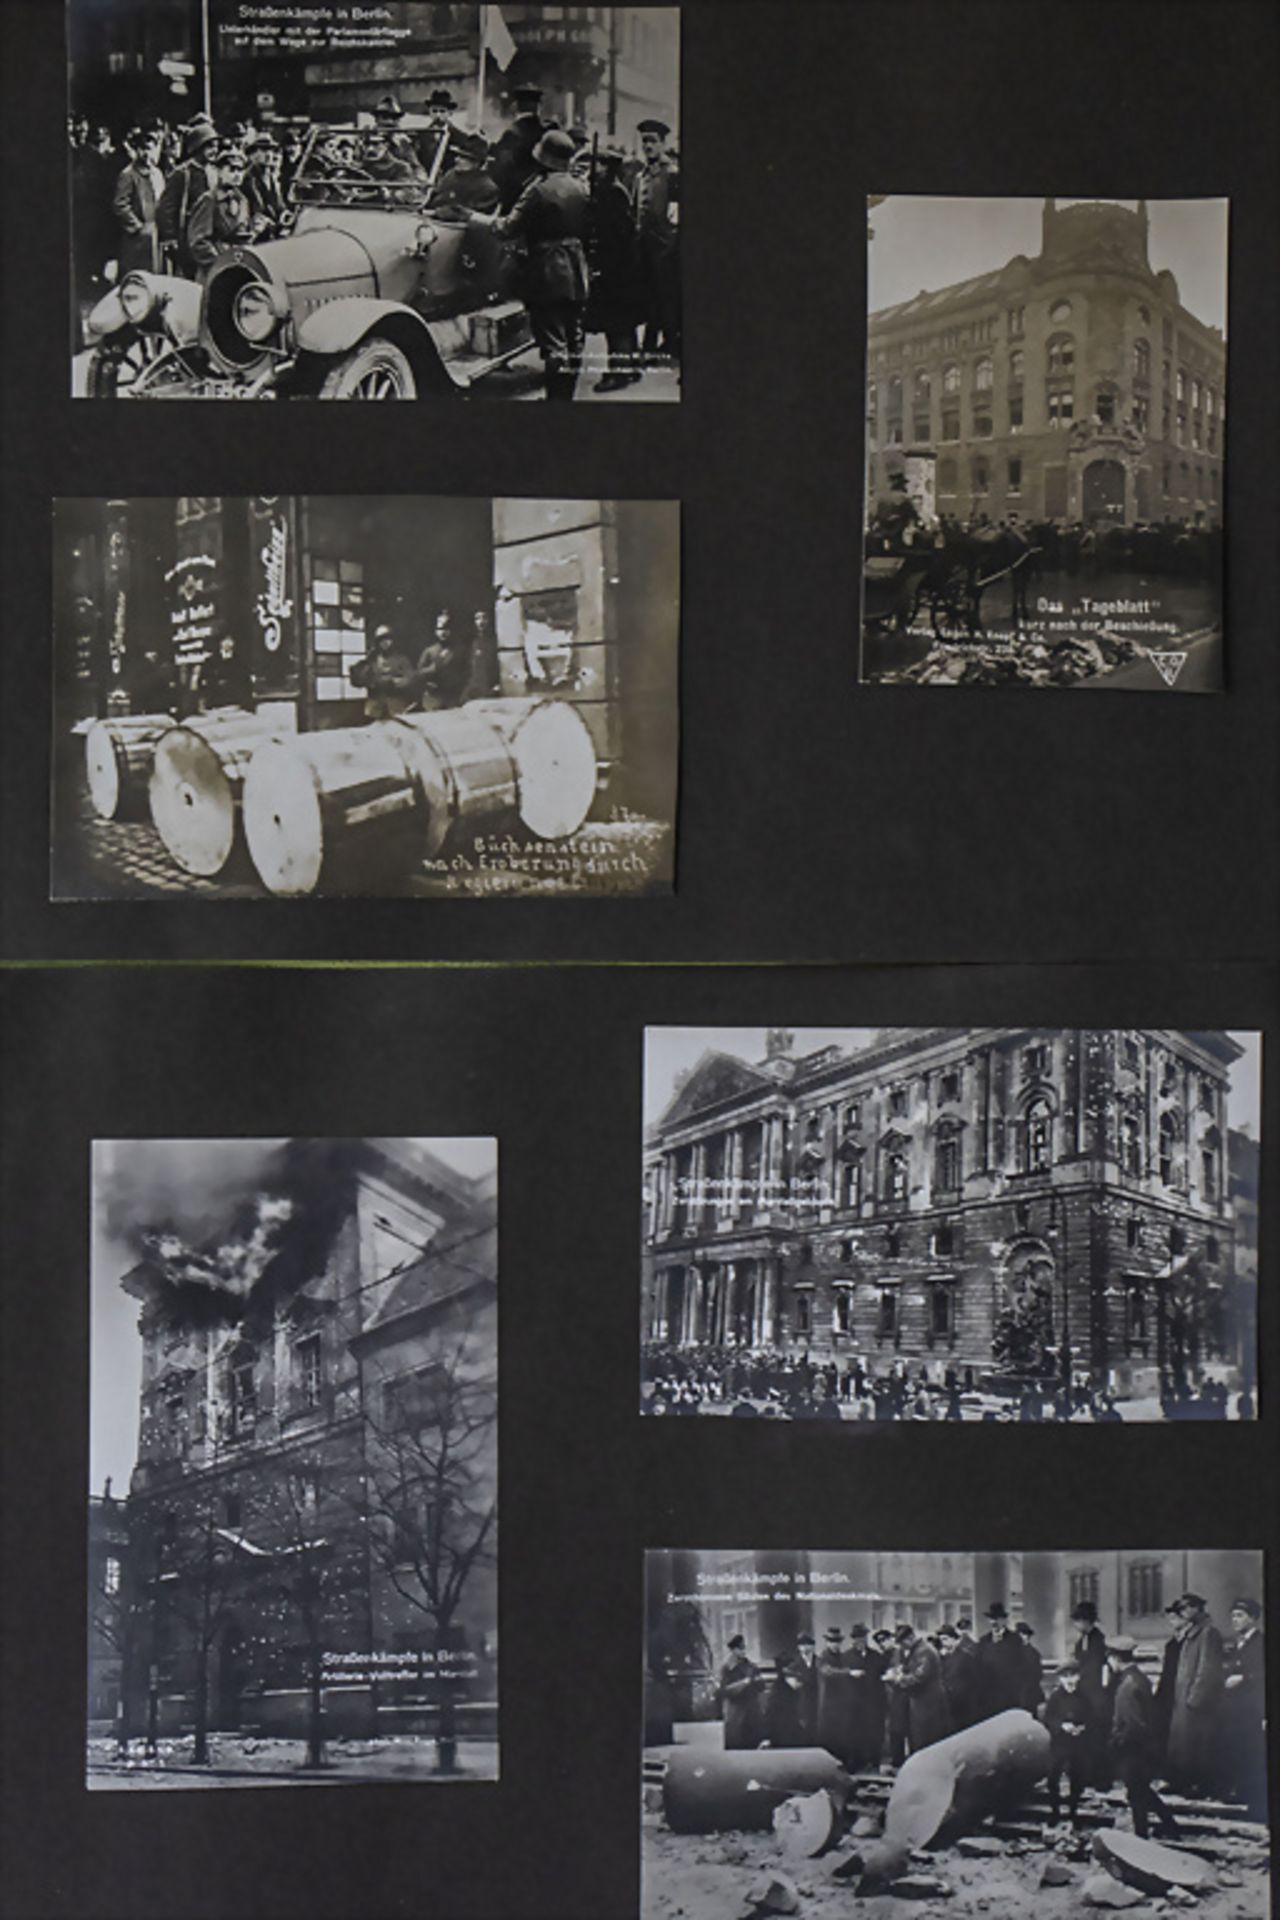 Fotografien der 'Berliner Märzkämpfe 1919' / Photographs of 'Berlin March Battles'